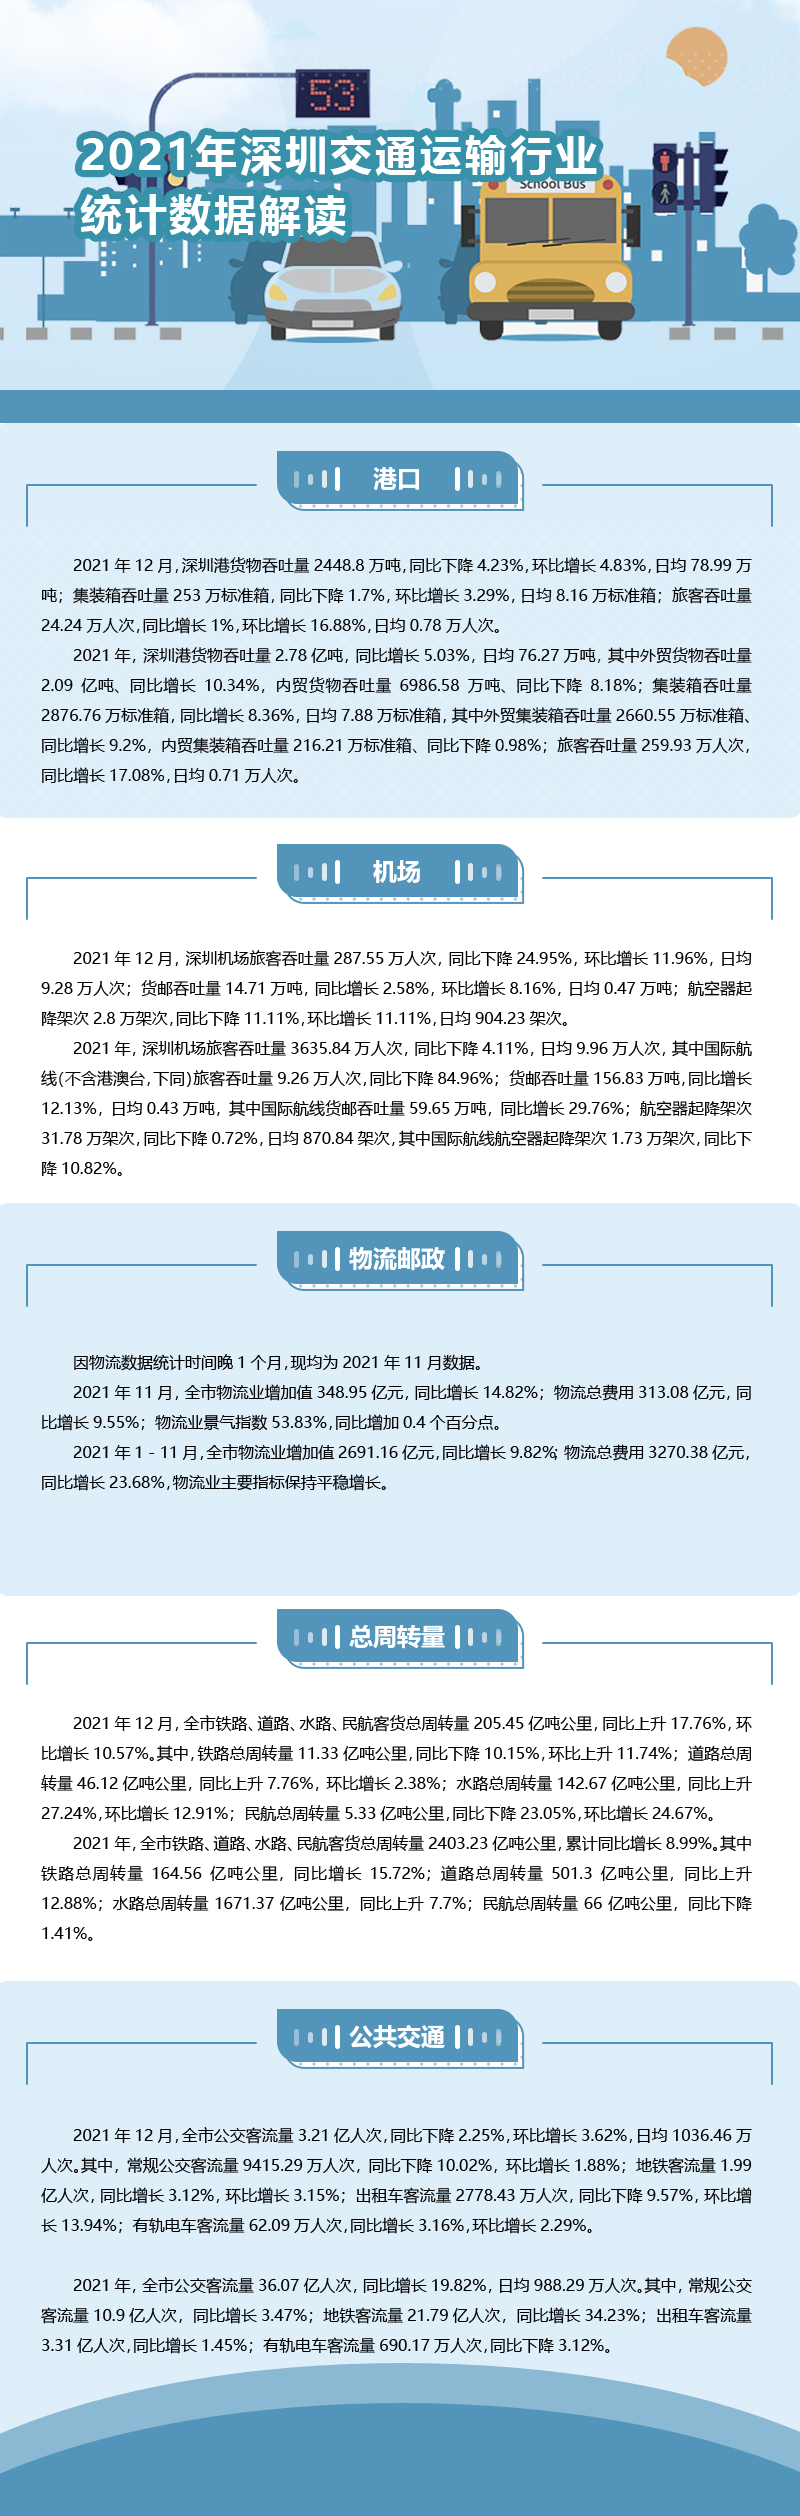 2021年深圳交通运输行业统计数据解读.png